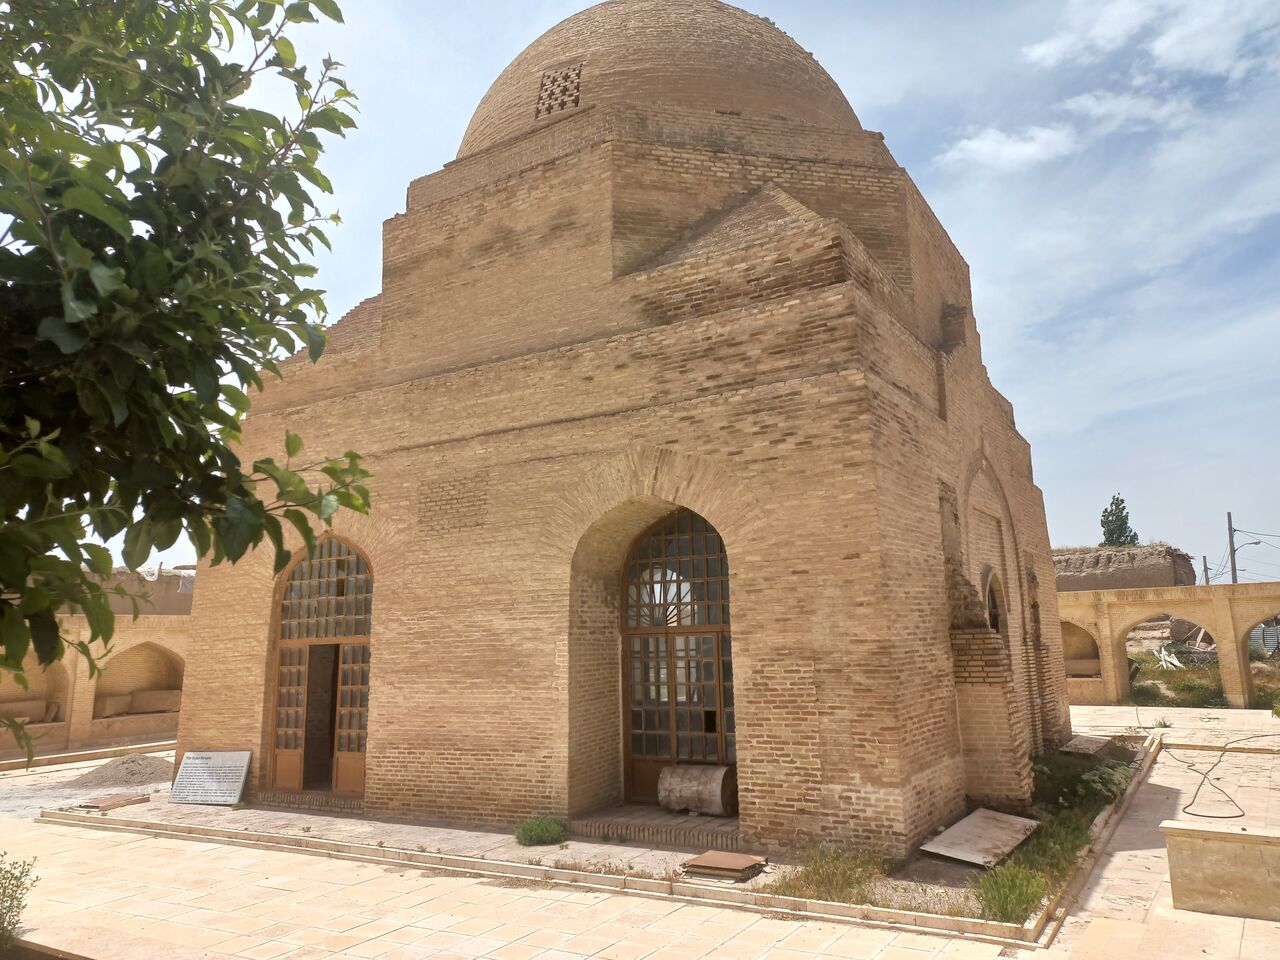 فیلم | مسجد جامع تاریخی سجاس اثری از دوره سلجوقیان